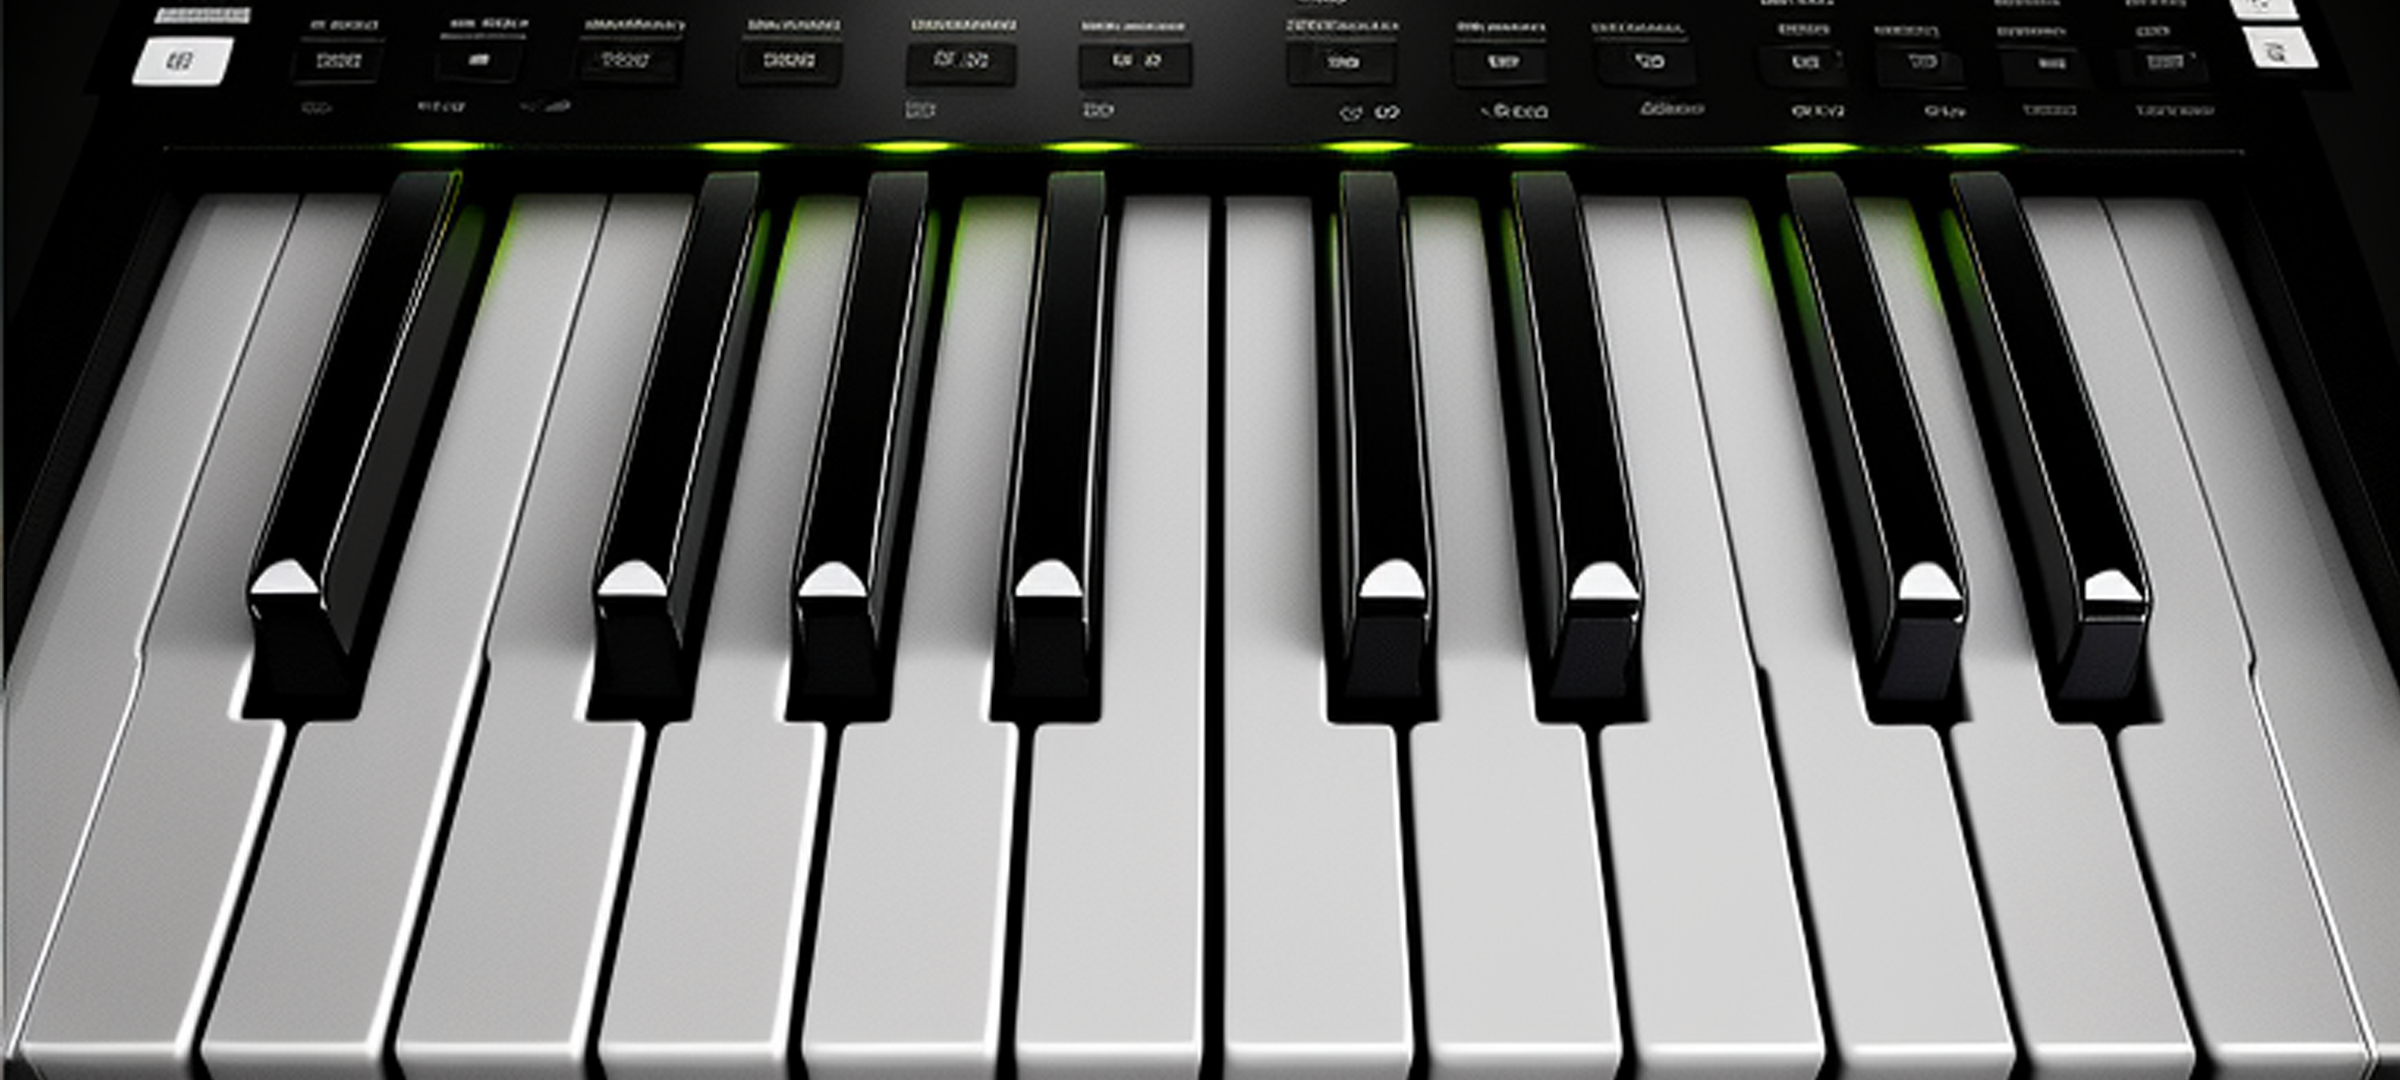 Screenshot 1 of Sáng tác piano điện tử 1.0.0